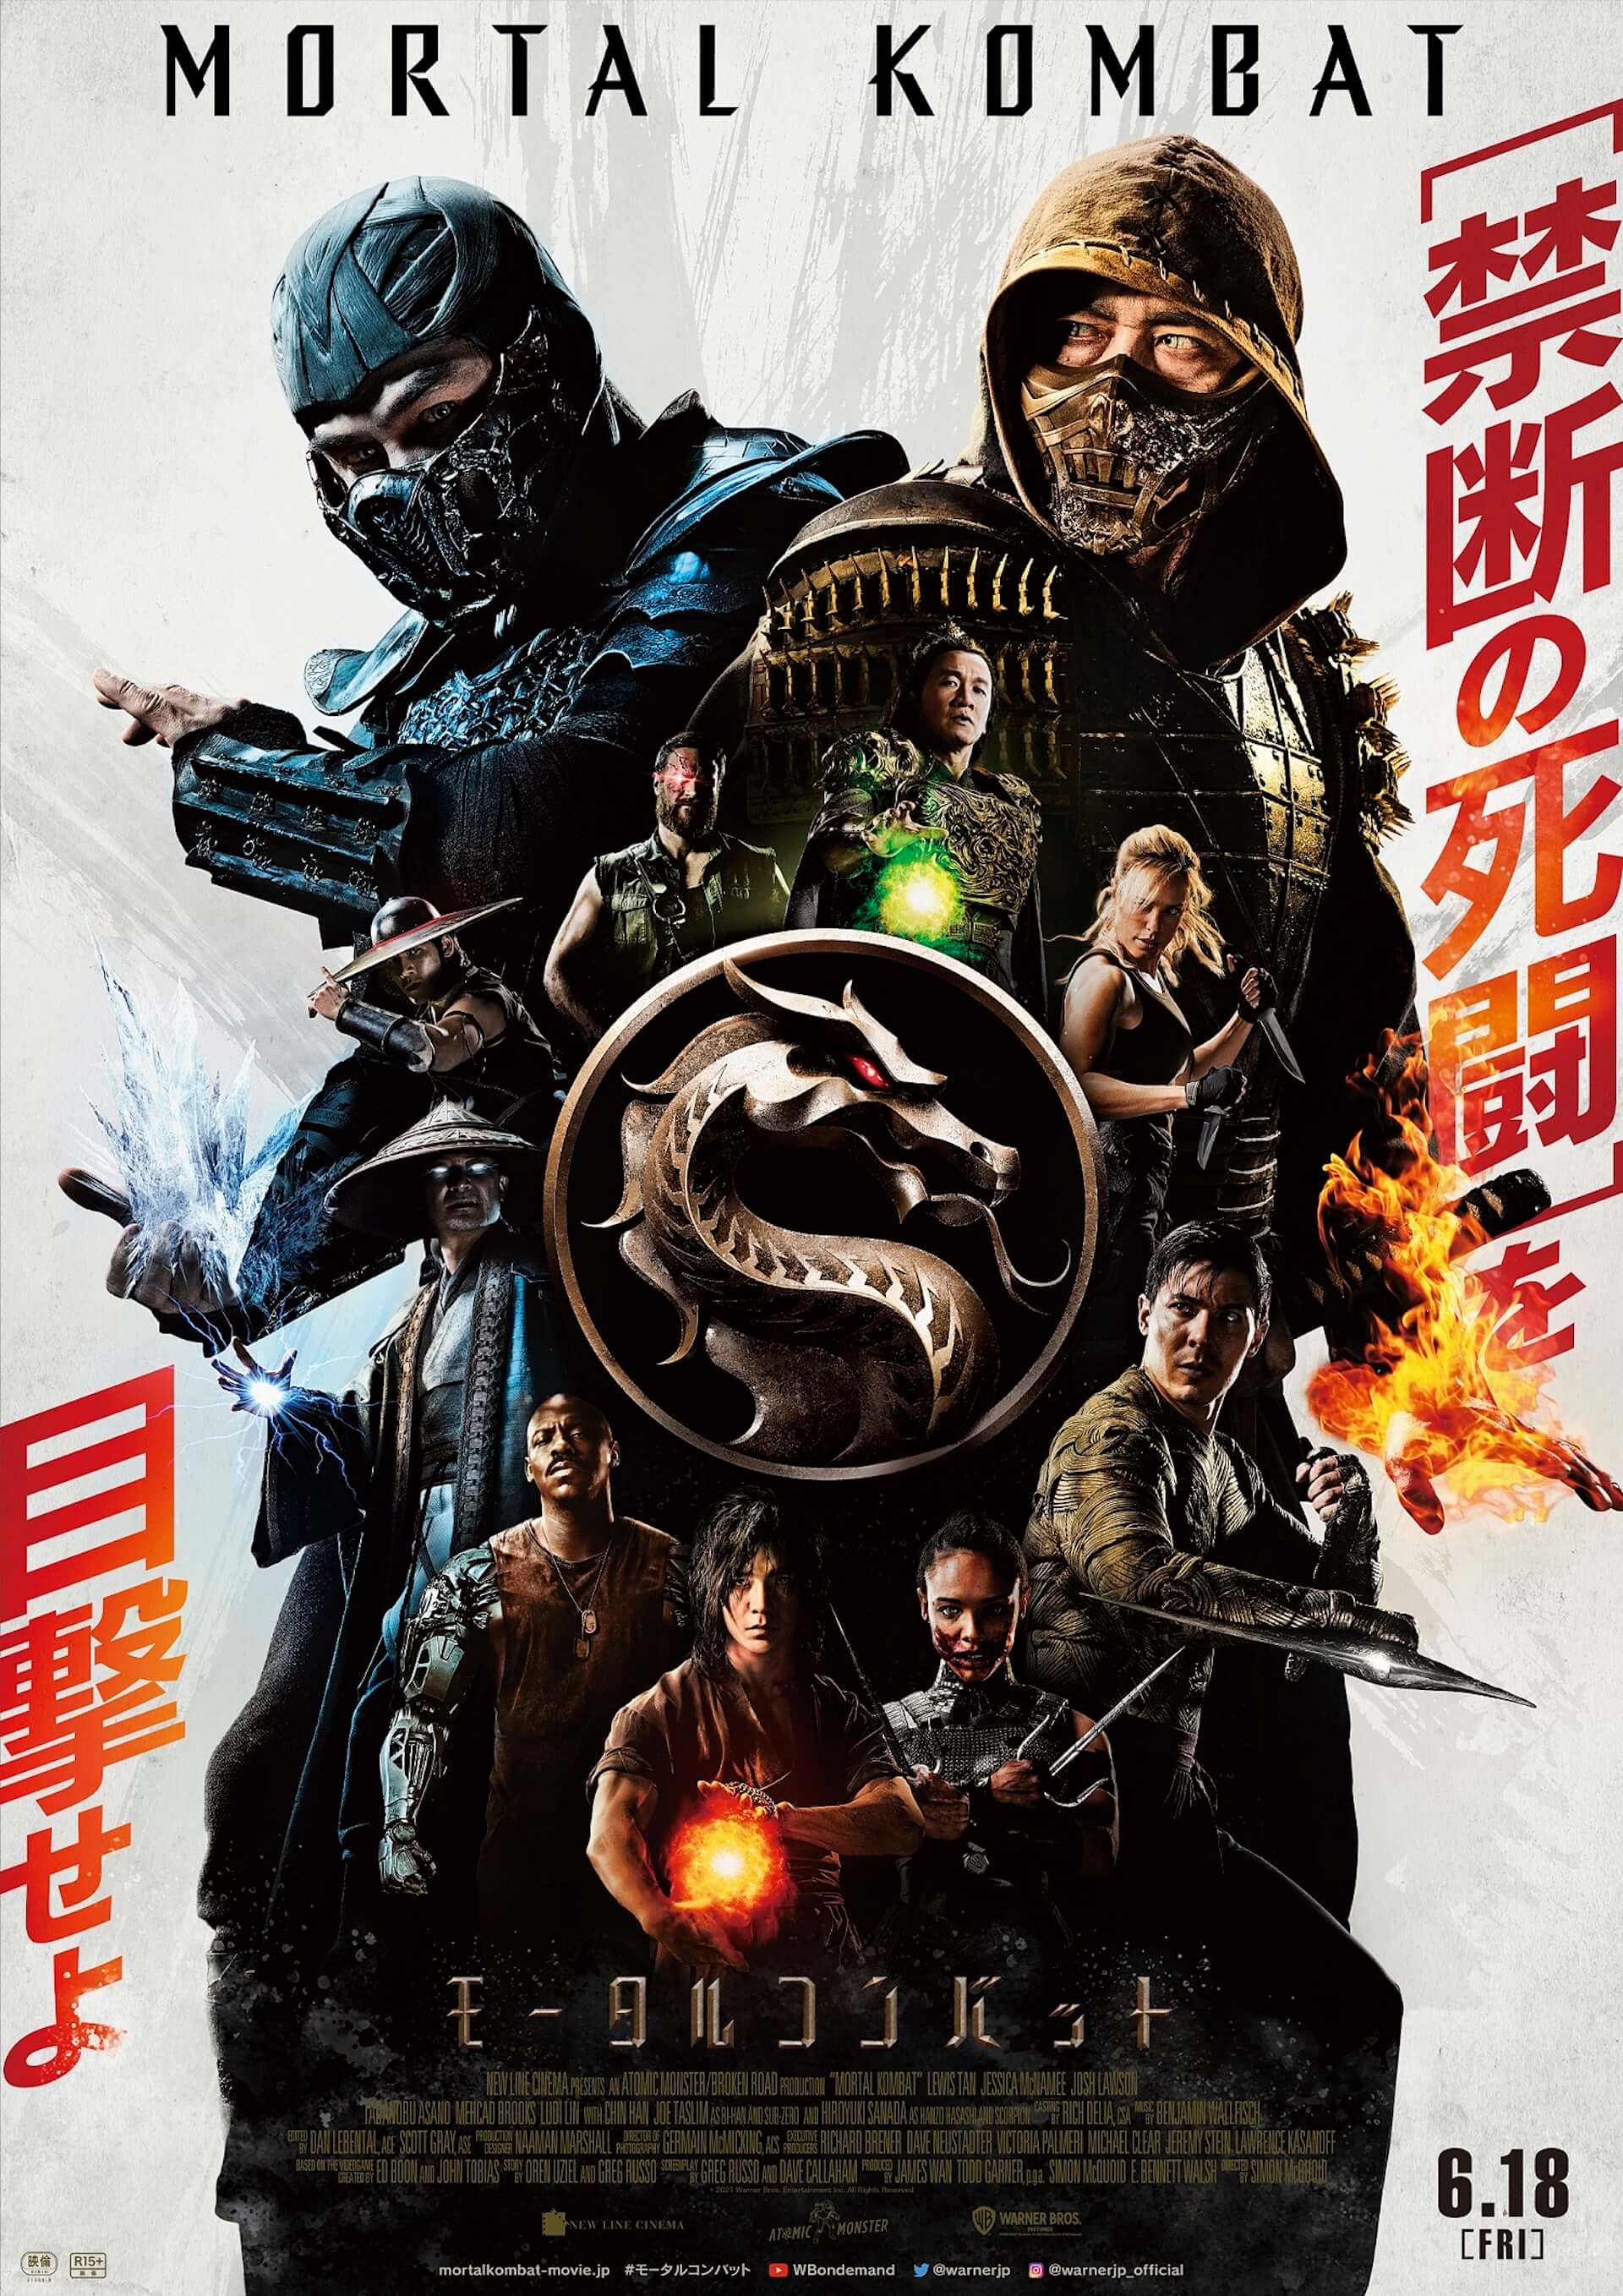 グロすぎるゲームの実写化映画がついに日本で解禁 映画 モータルコンバット の本ポスター 本予告映像が公開 Qetic